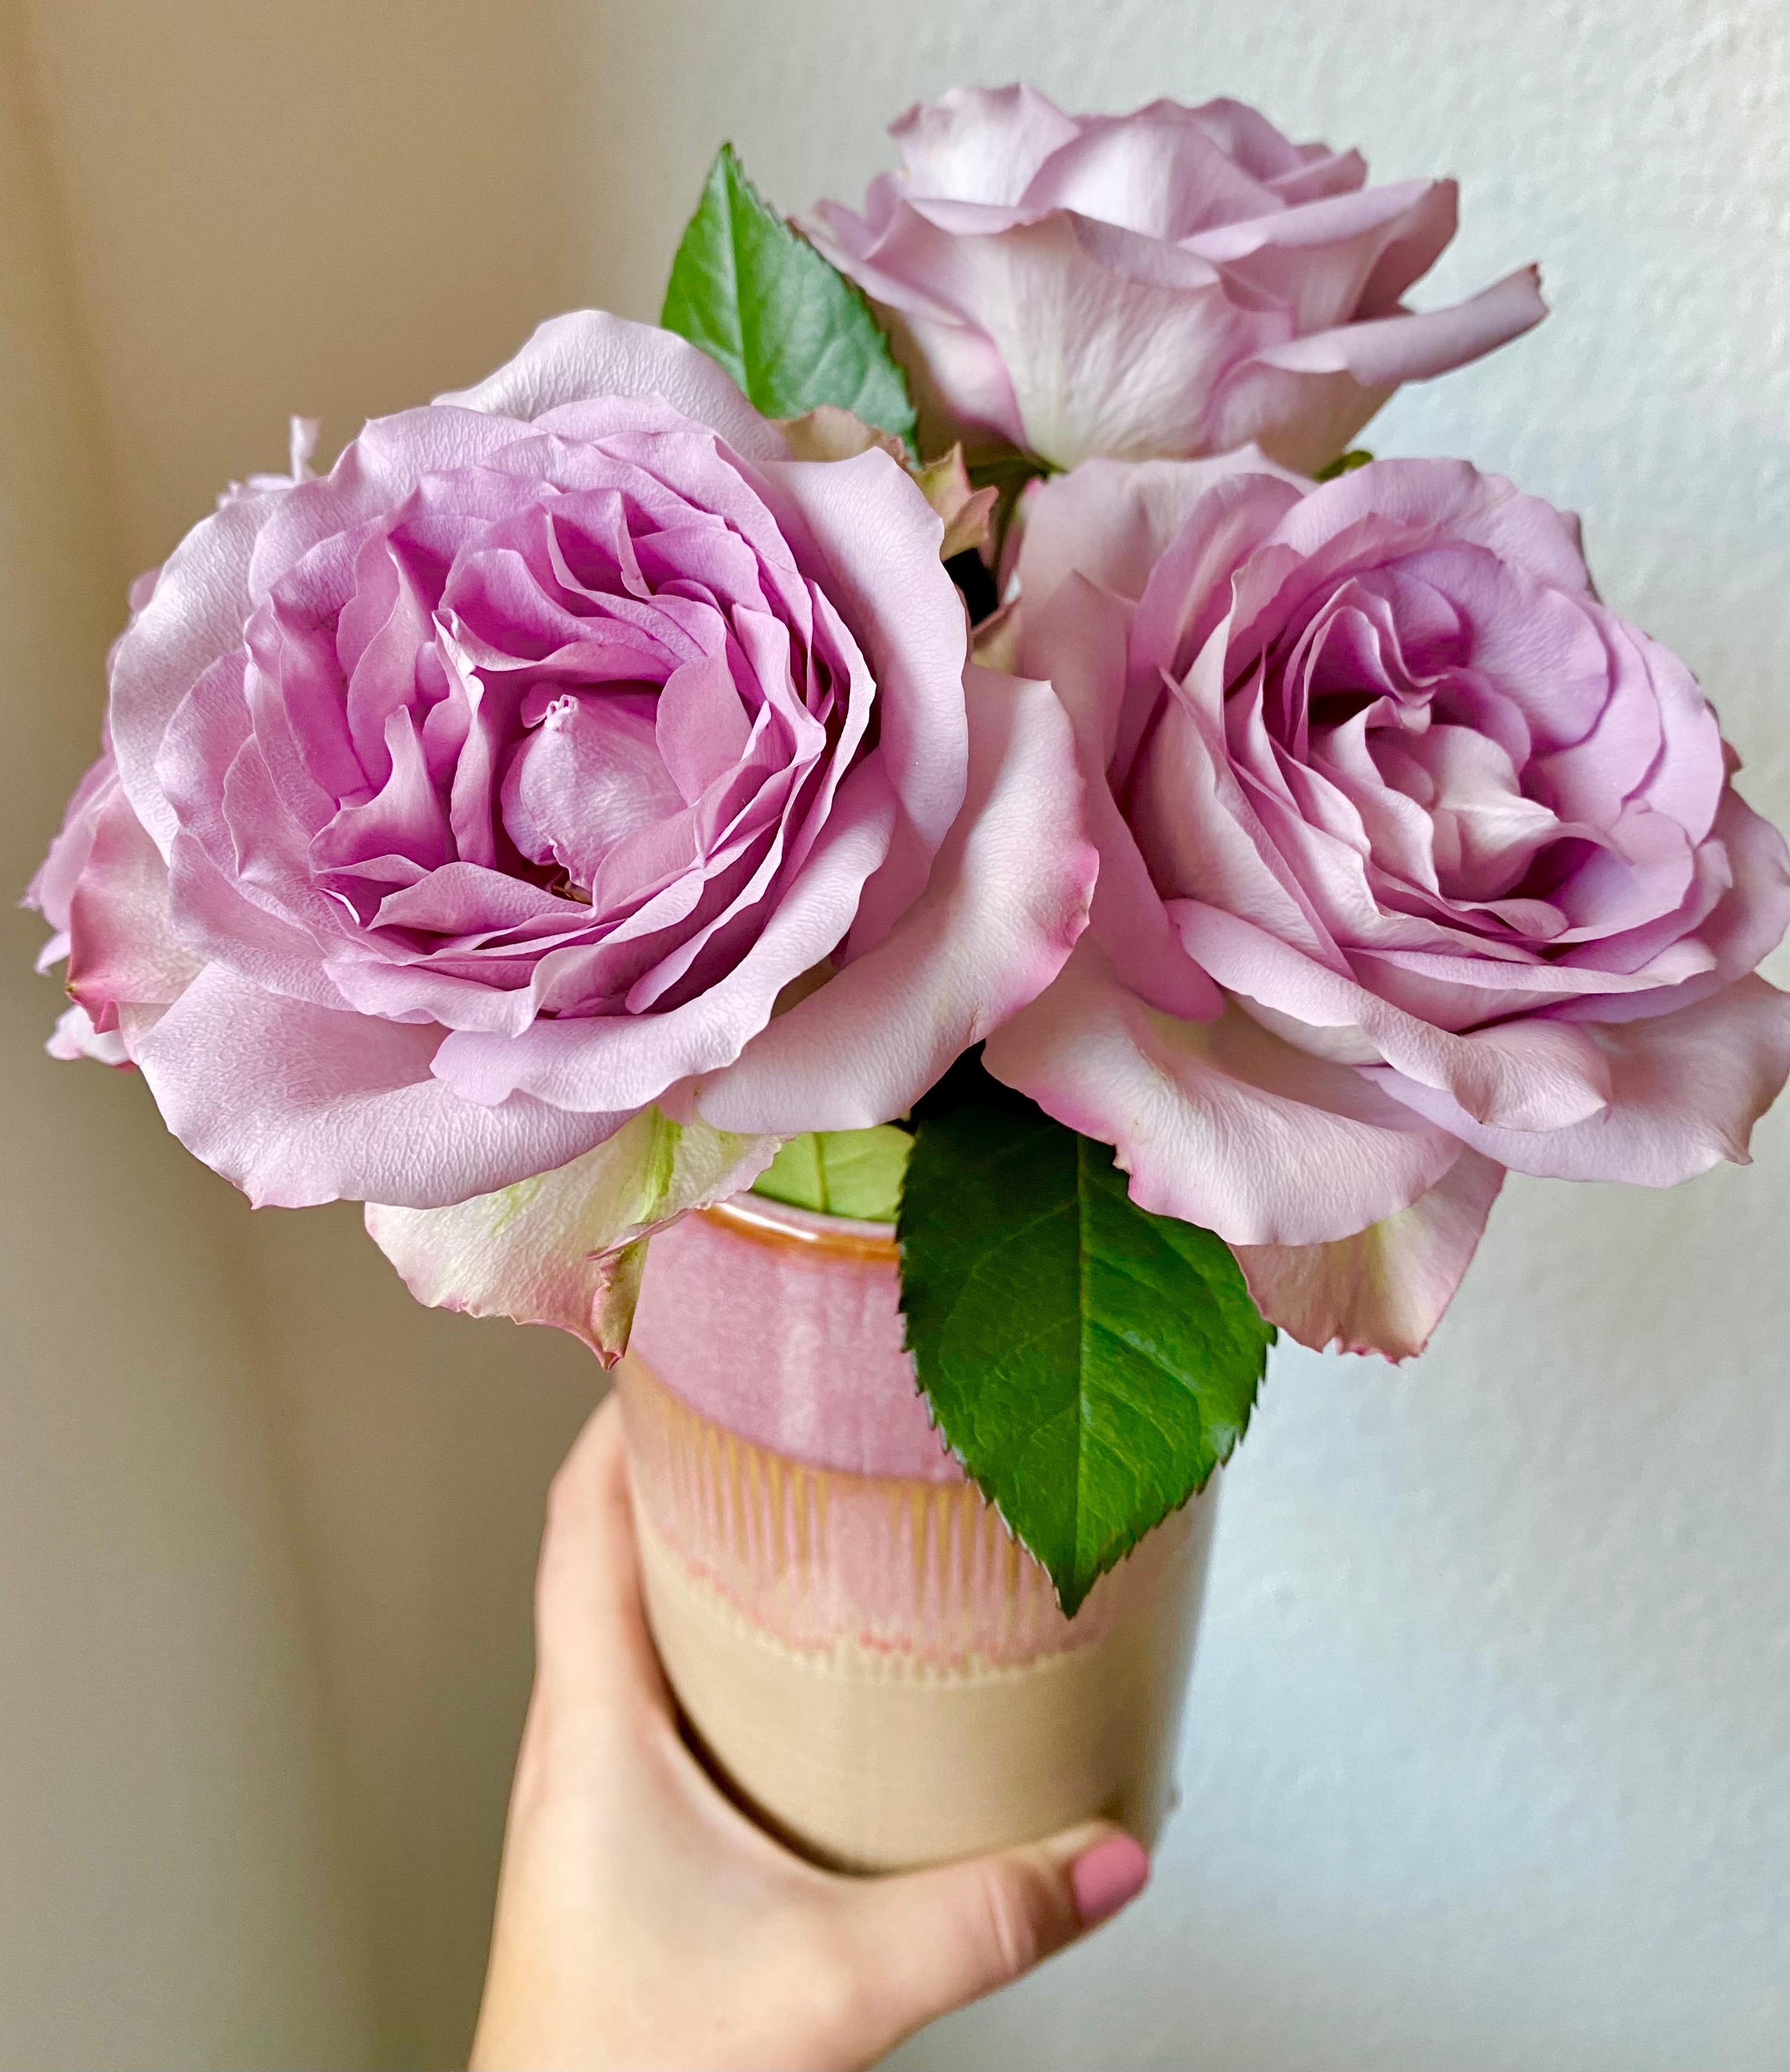 Schon fast verblüht, aber noch wunderschön #rosen #vase